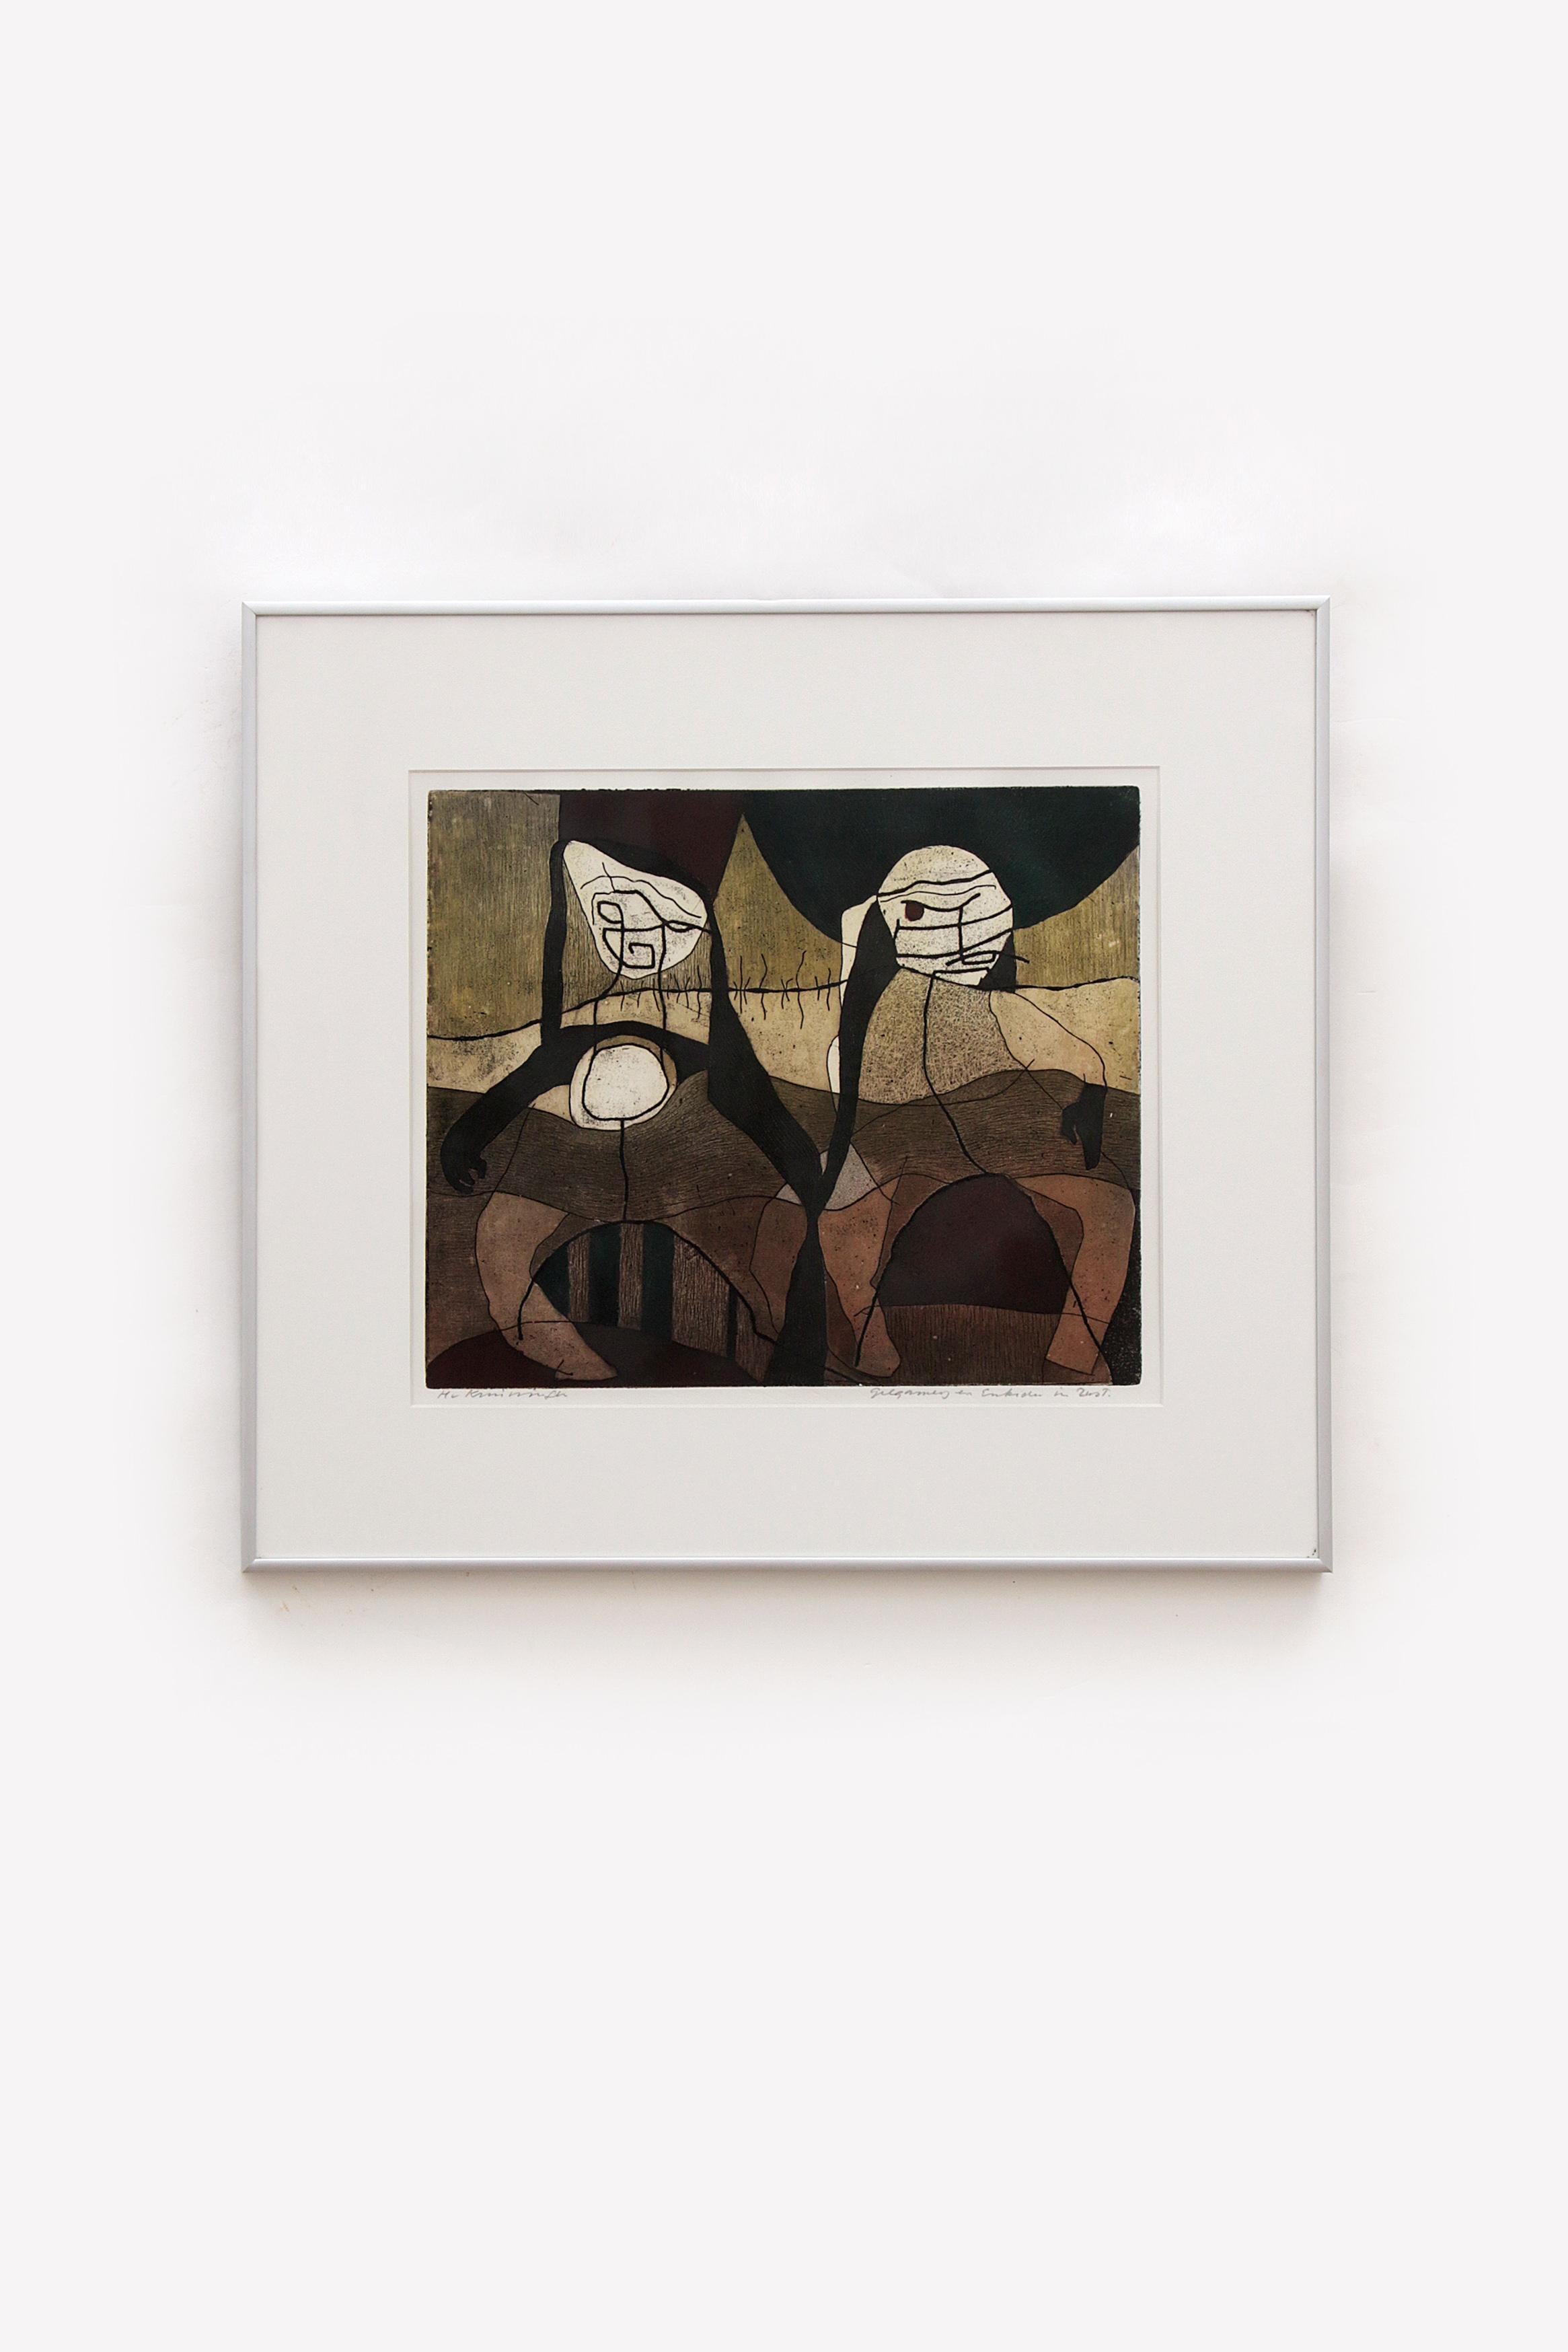 Harry Van Kruiningen Signiertes Werk Gilgamesch


Entdecken Sie die bezaubernde Kunstwelt von Harry van Kruiningen, einem der berühmtesten niederländischen Künstler des zwanzigsten Jahrhunderts. Der 1906 als Harry Janssen geborene, vielseitige